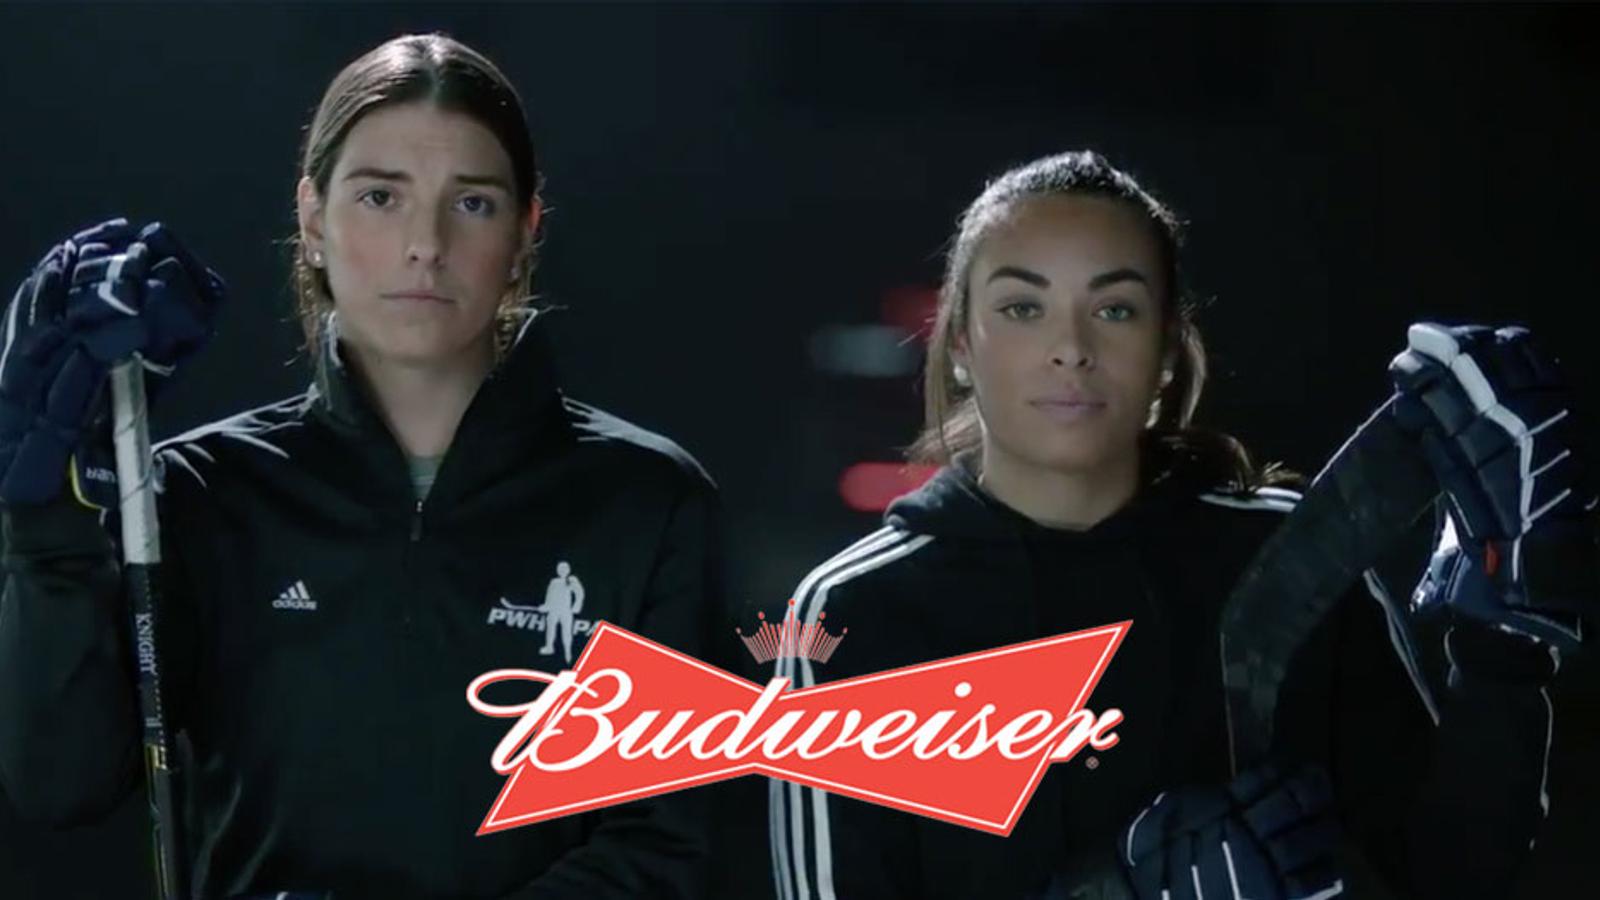 Budweiser steps up to sponsor women’s league